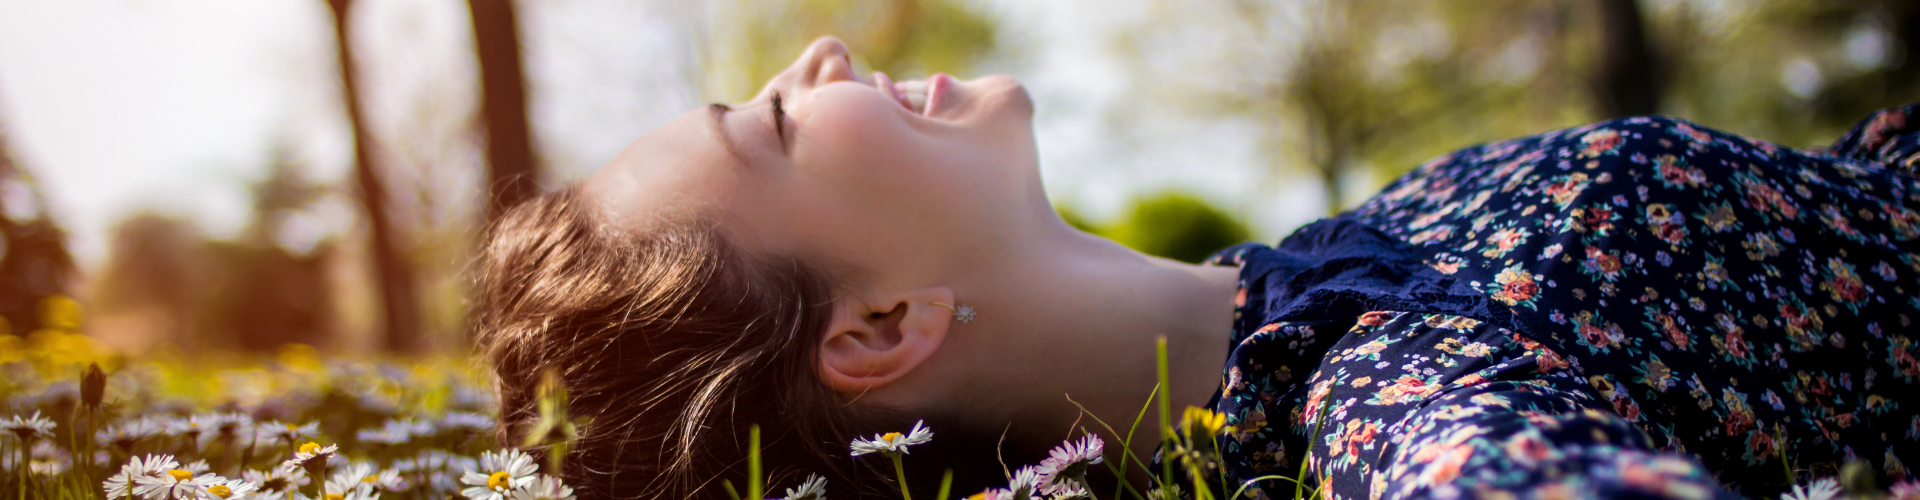 adem ontspanning rust zelfinzicht ademtechnieken